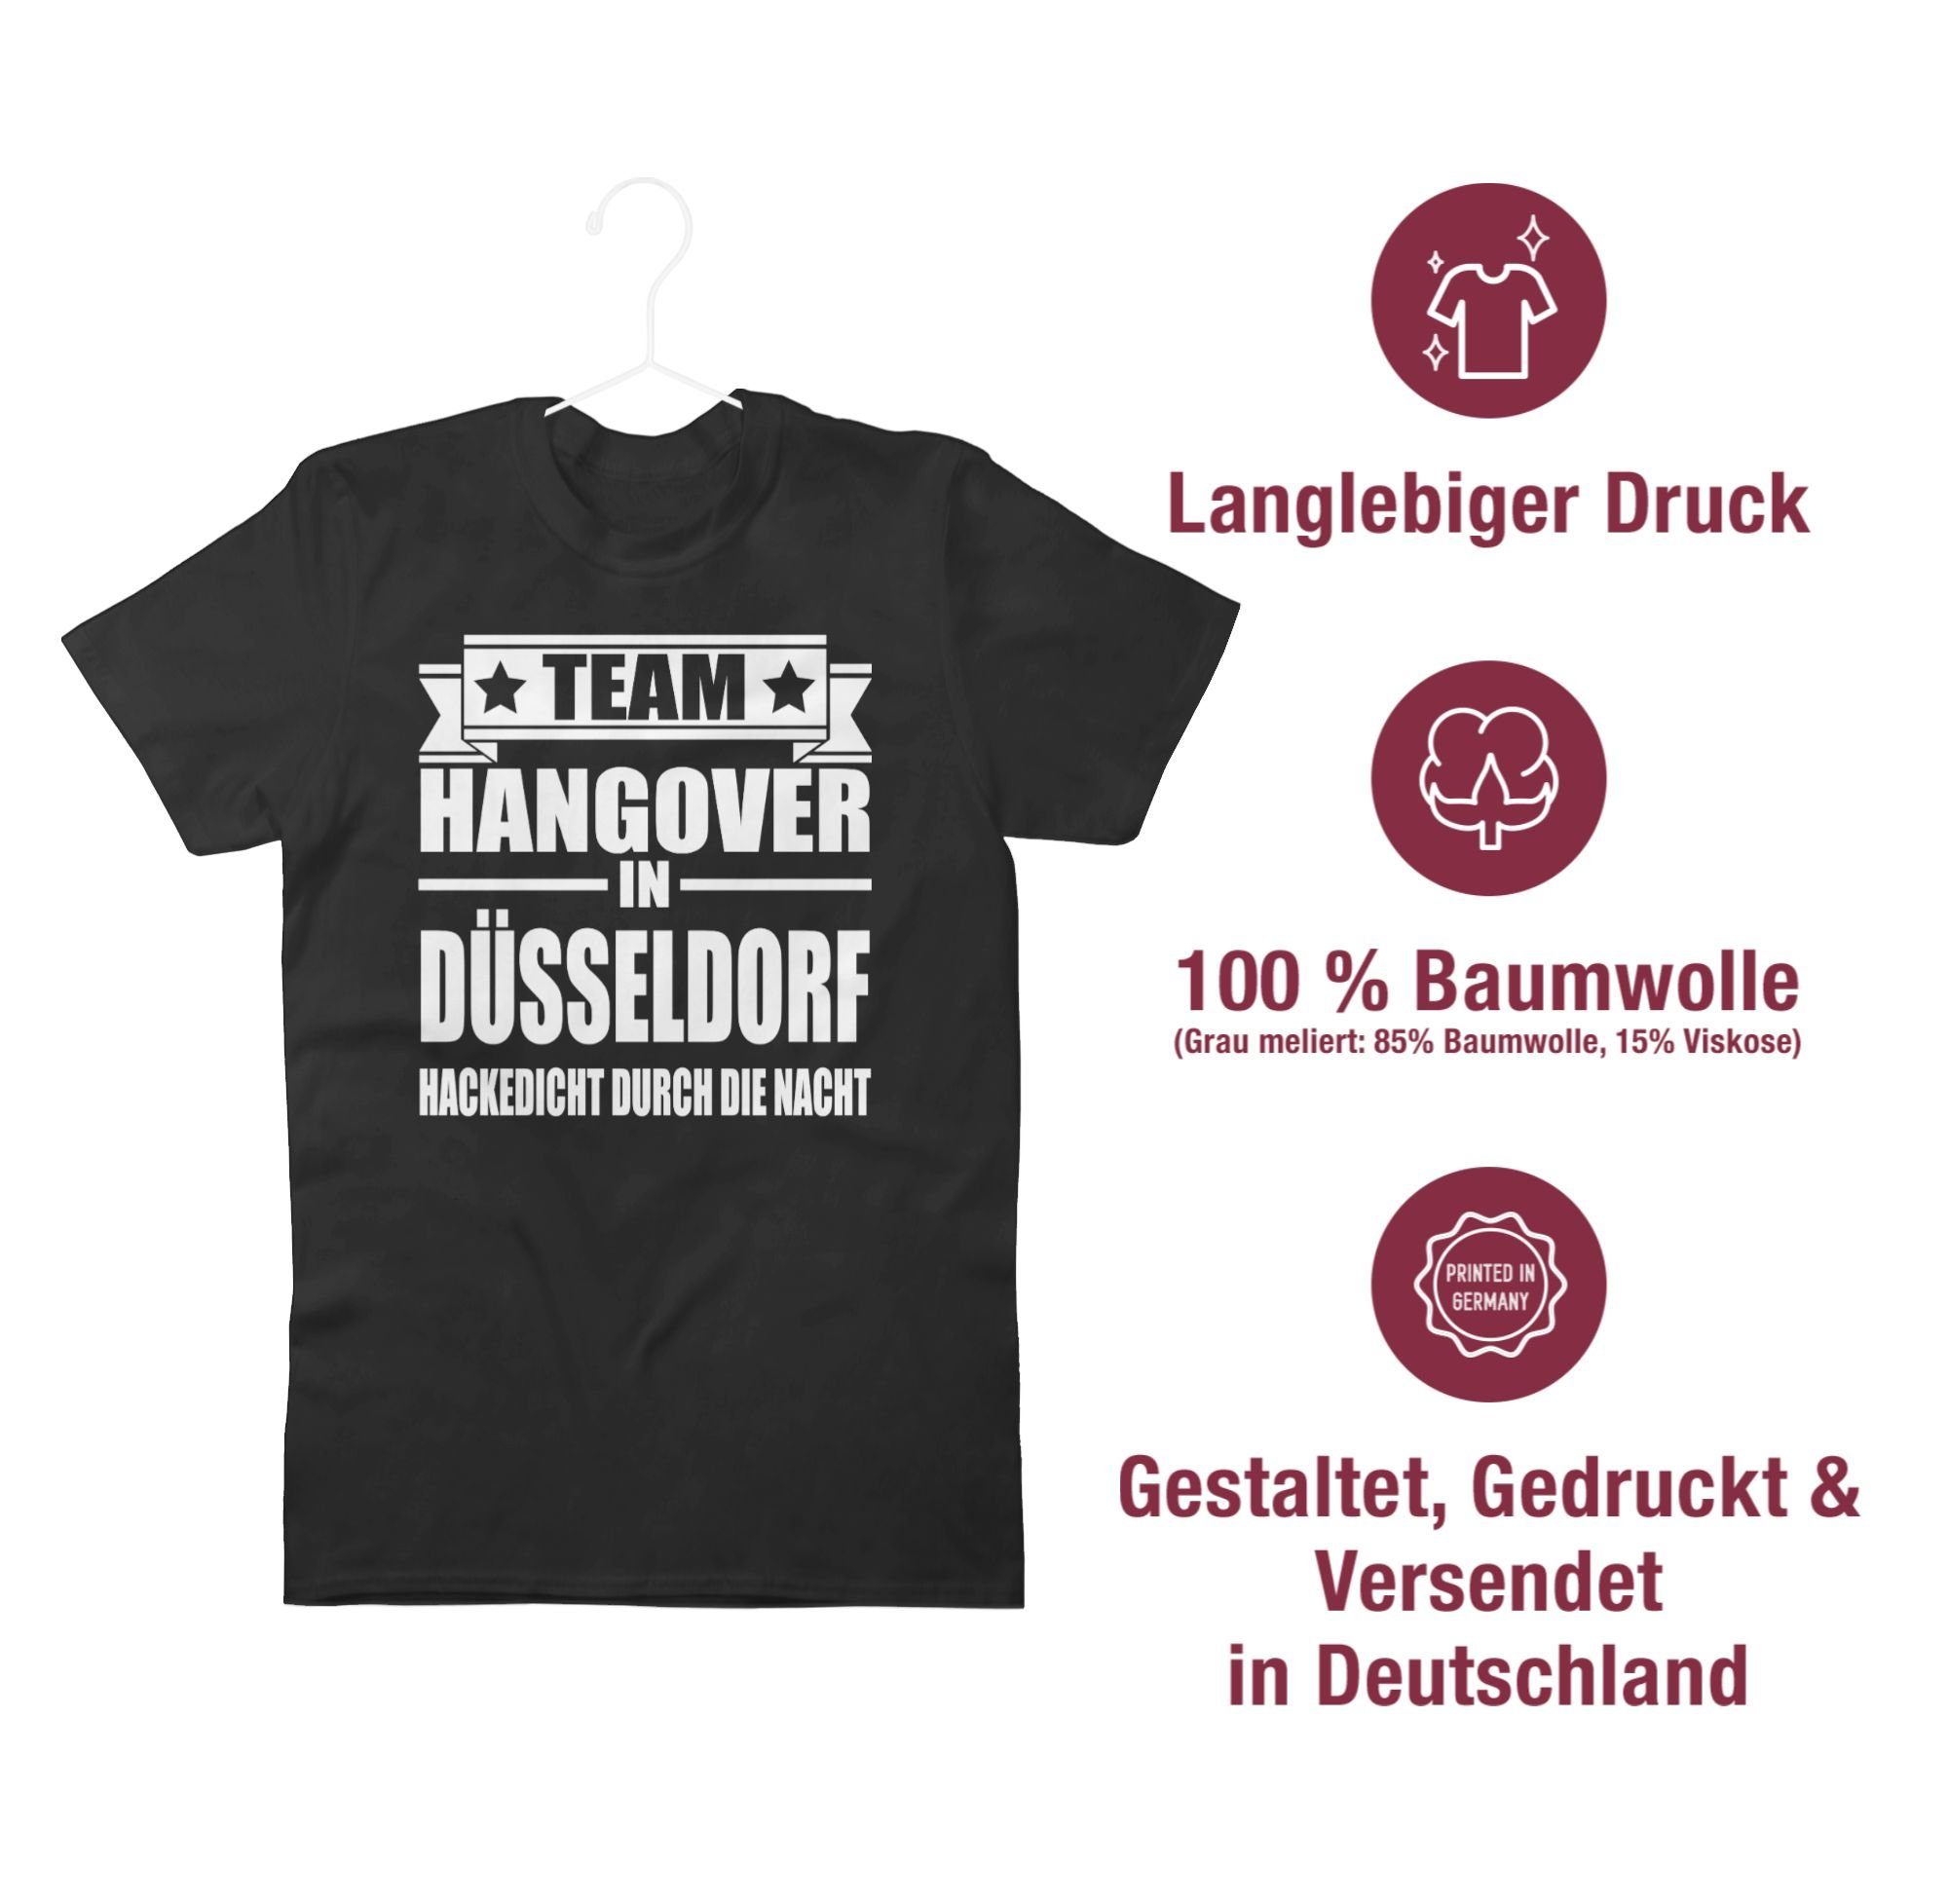 Schwarz Männer 01 Hangover JGA Shirtracer T-Shirt Team Düsseldorf